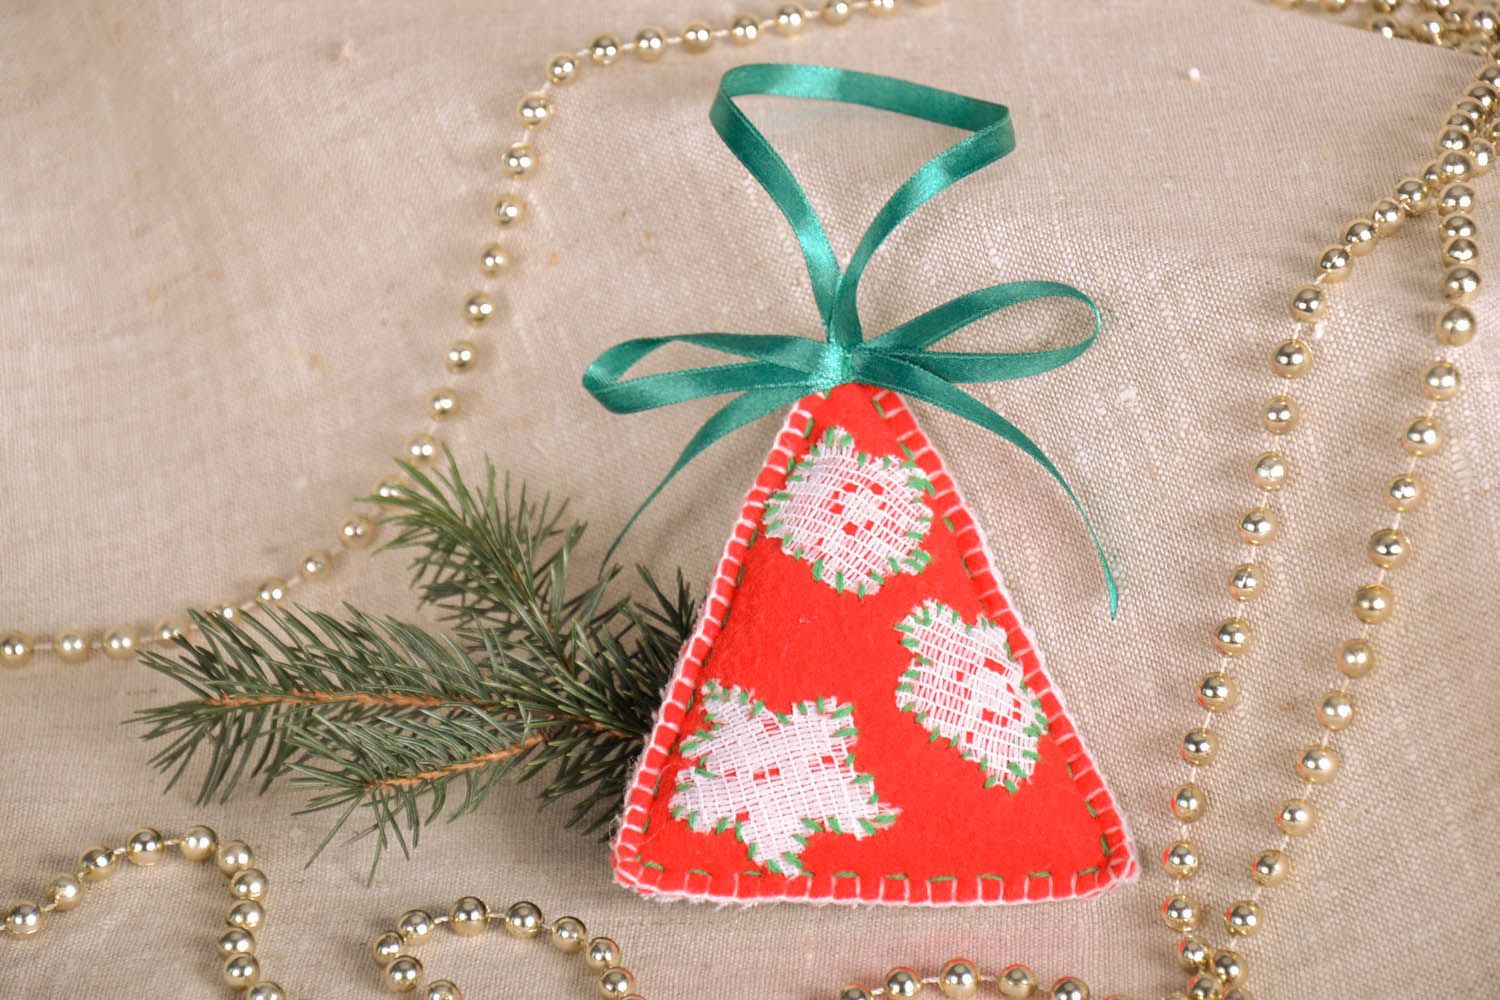 Brinquedo de Natal artesanal costurado de fleece edecorado com rendas artesanais foto 1